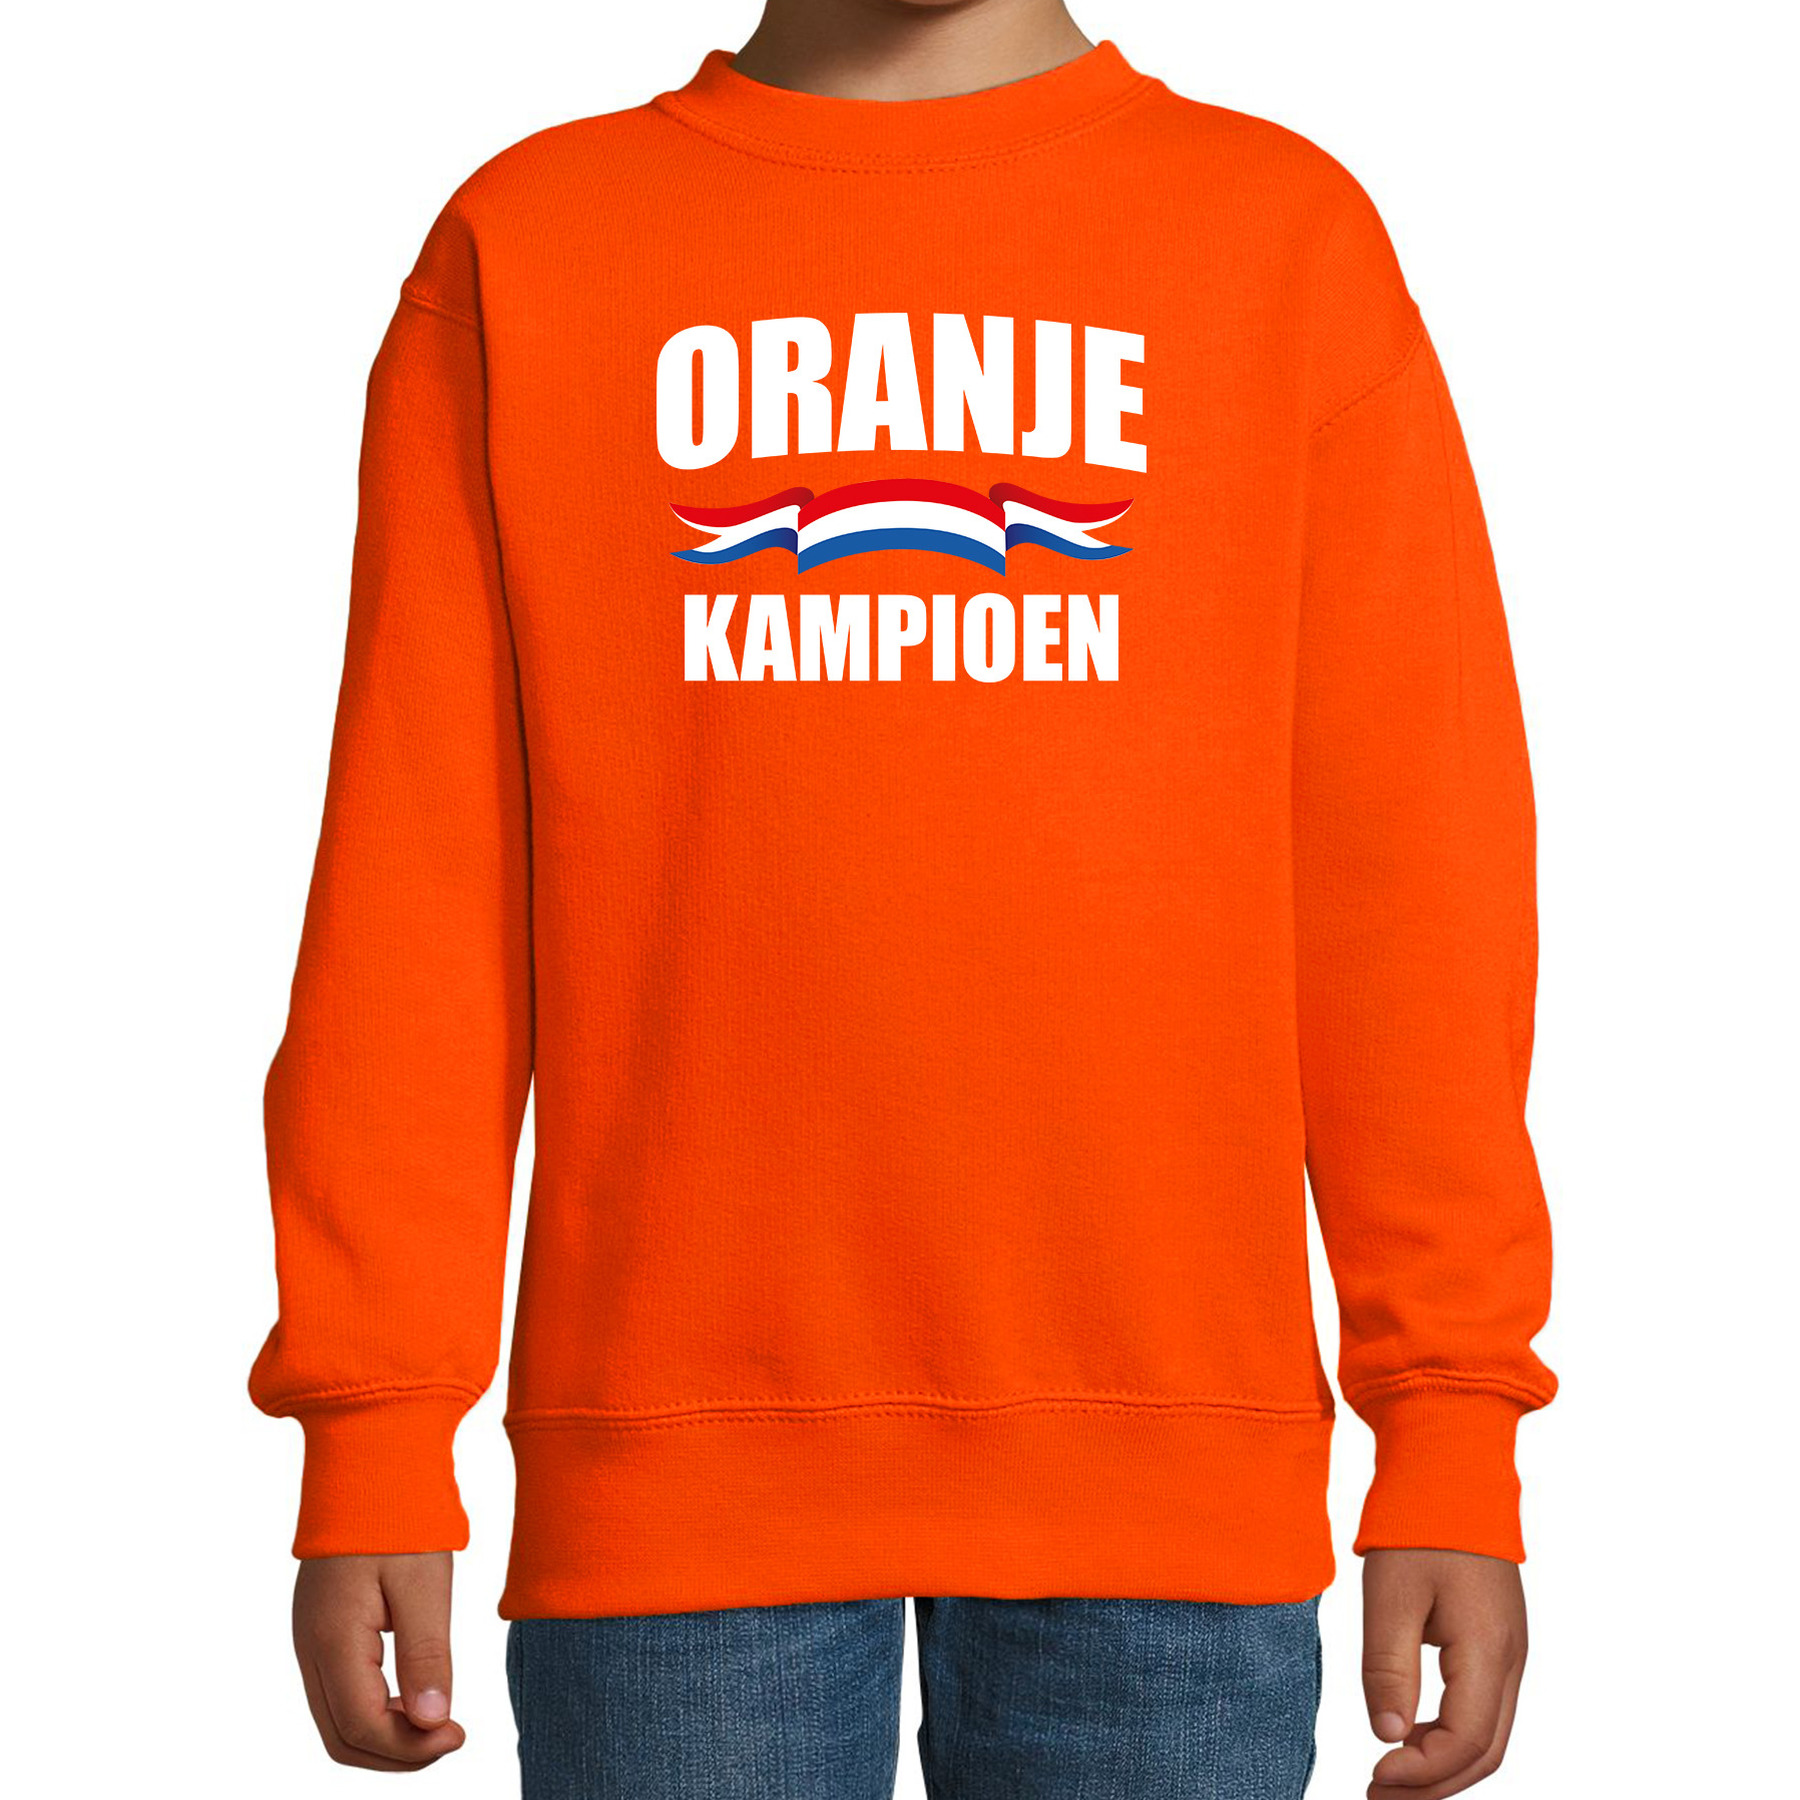 Oranje kampioen sweater-trui Holland-Nederland supporter EK- WK voor kinderen